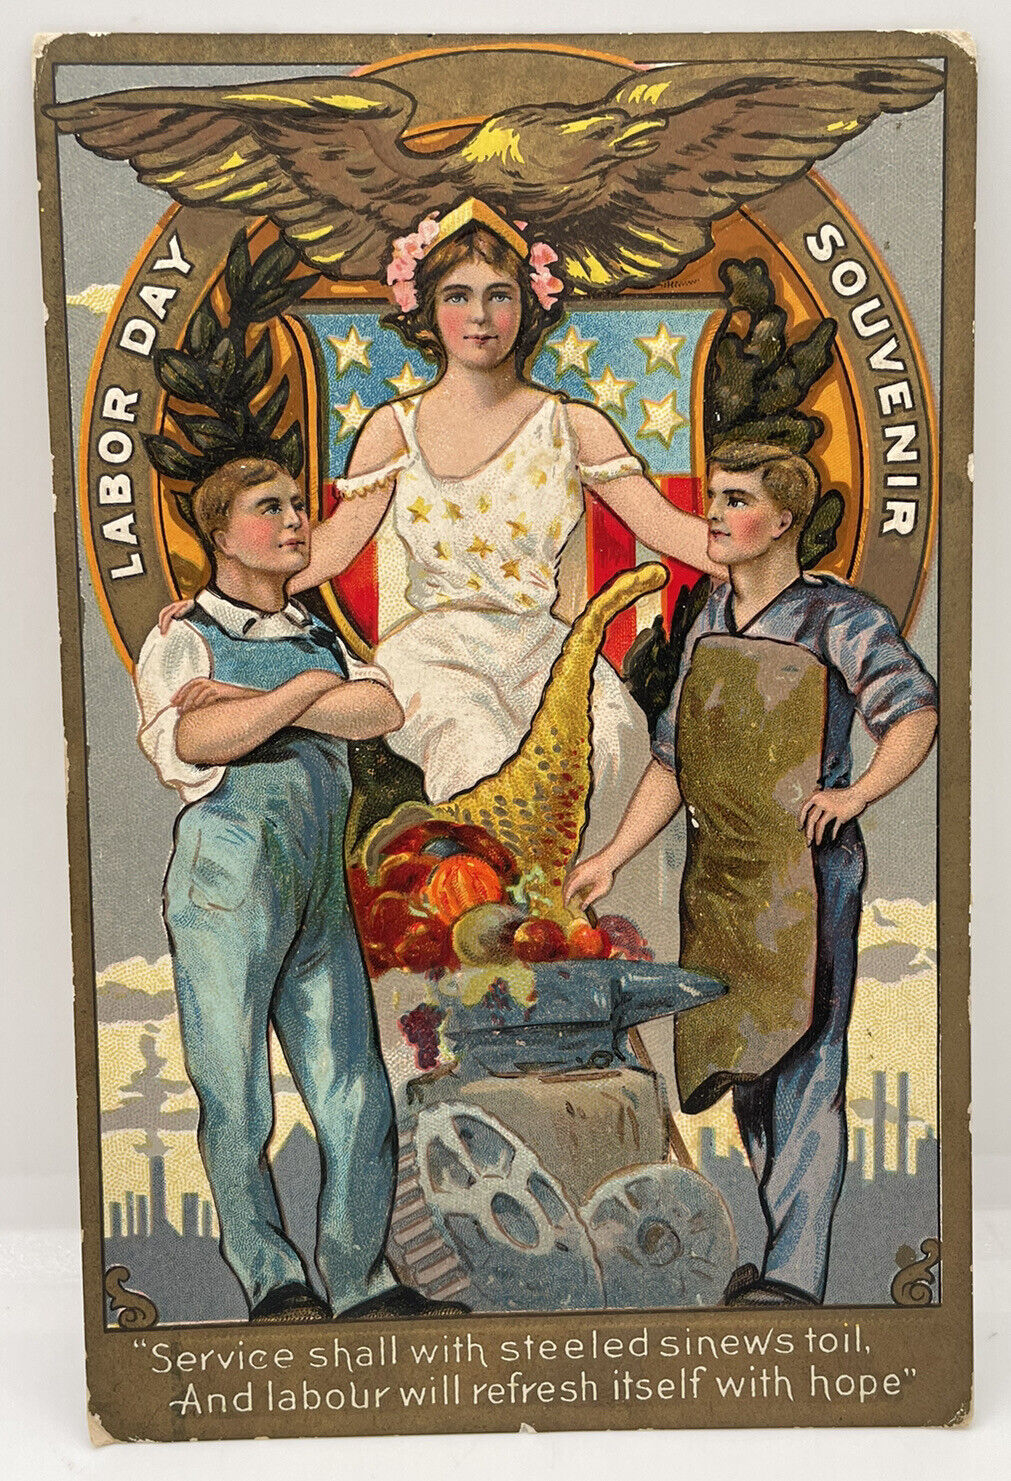 Nash Patriotic Labor Day Series Blacksmith Anvil Gears c 1910 Postcard Antique